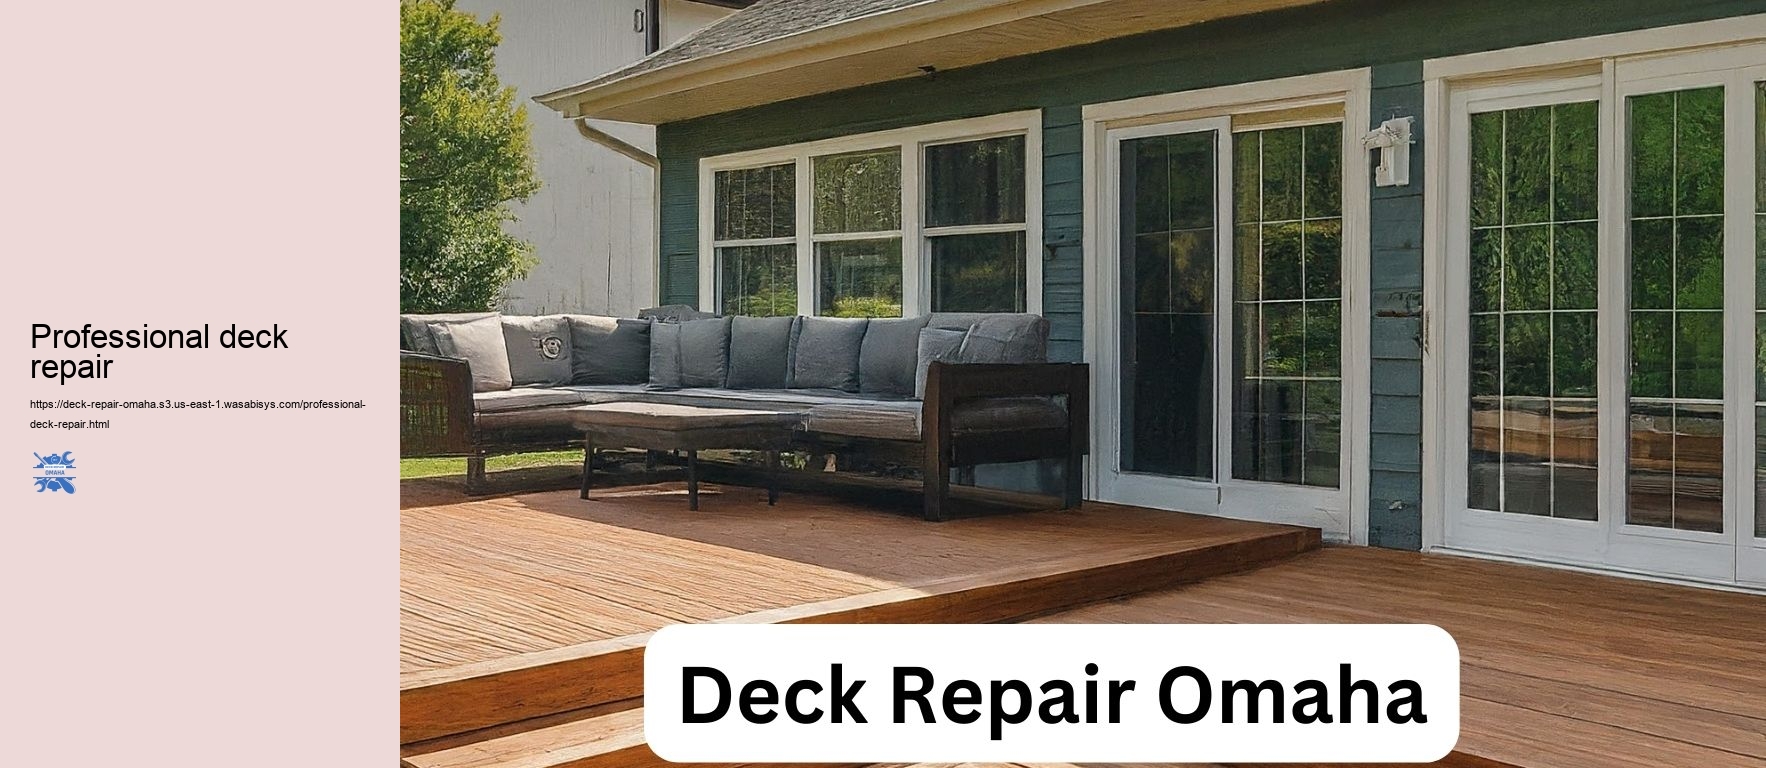 Professional deck repair